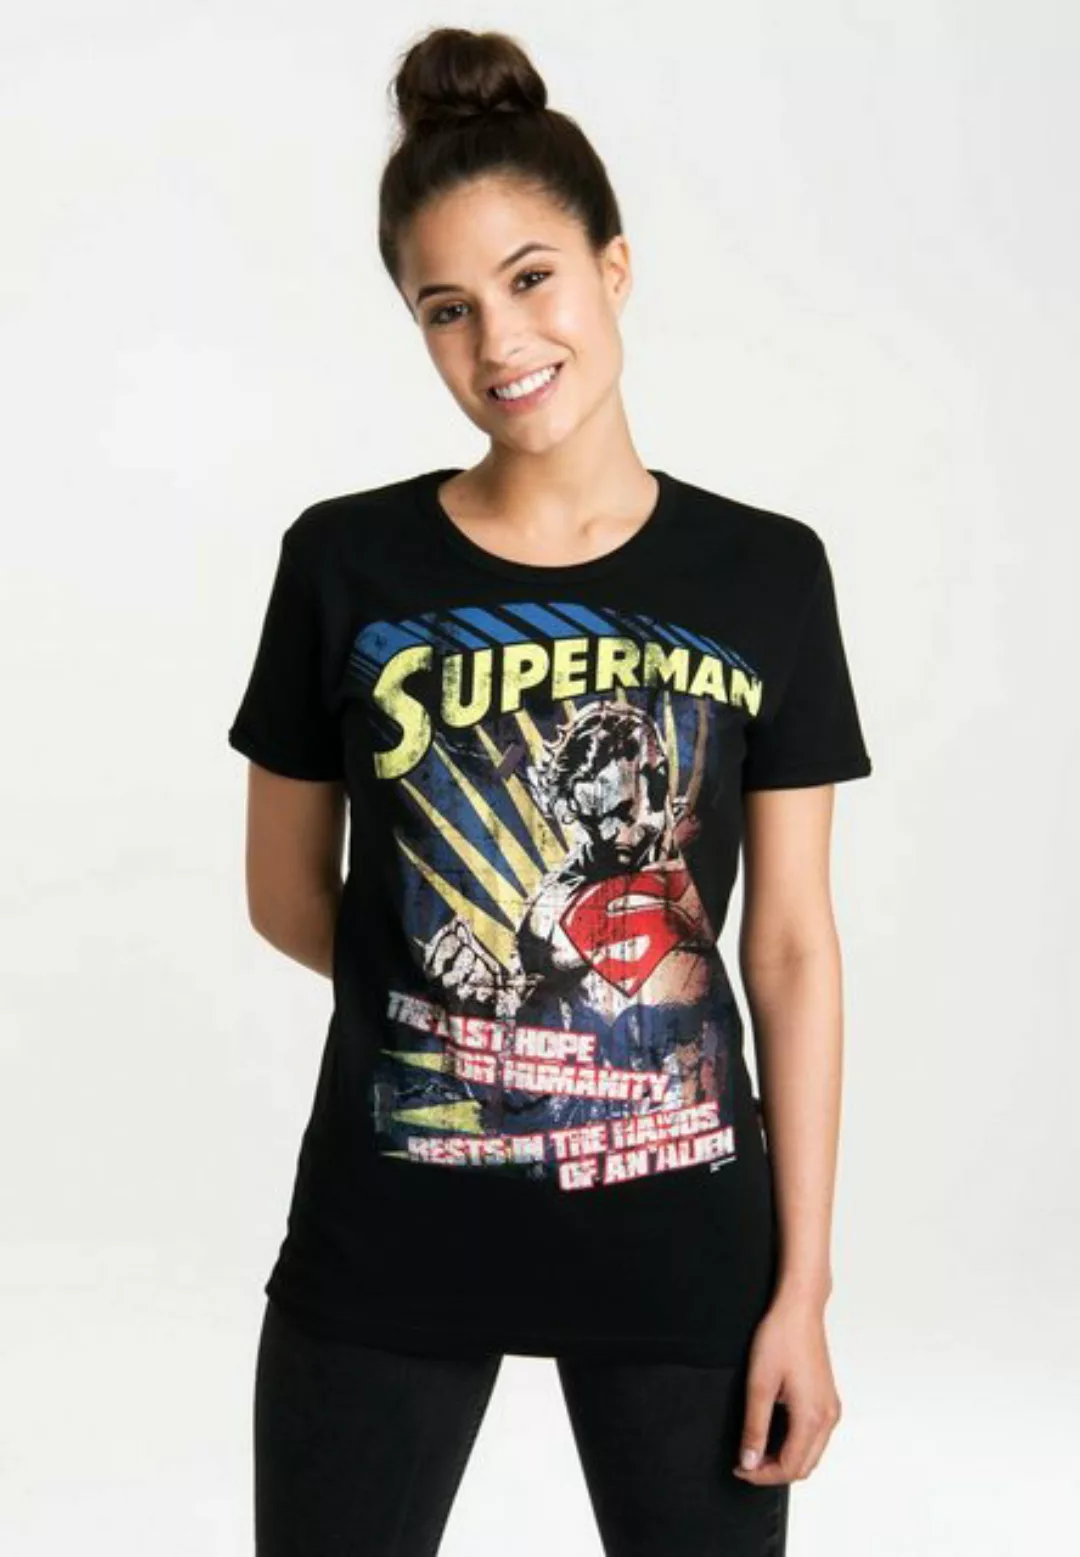 LOGOSHIRT T-Shirt "Superman – The Last Hope", mit lizenziertem Originaldesi günstig online kaufen